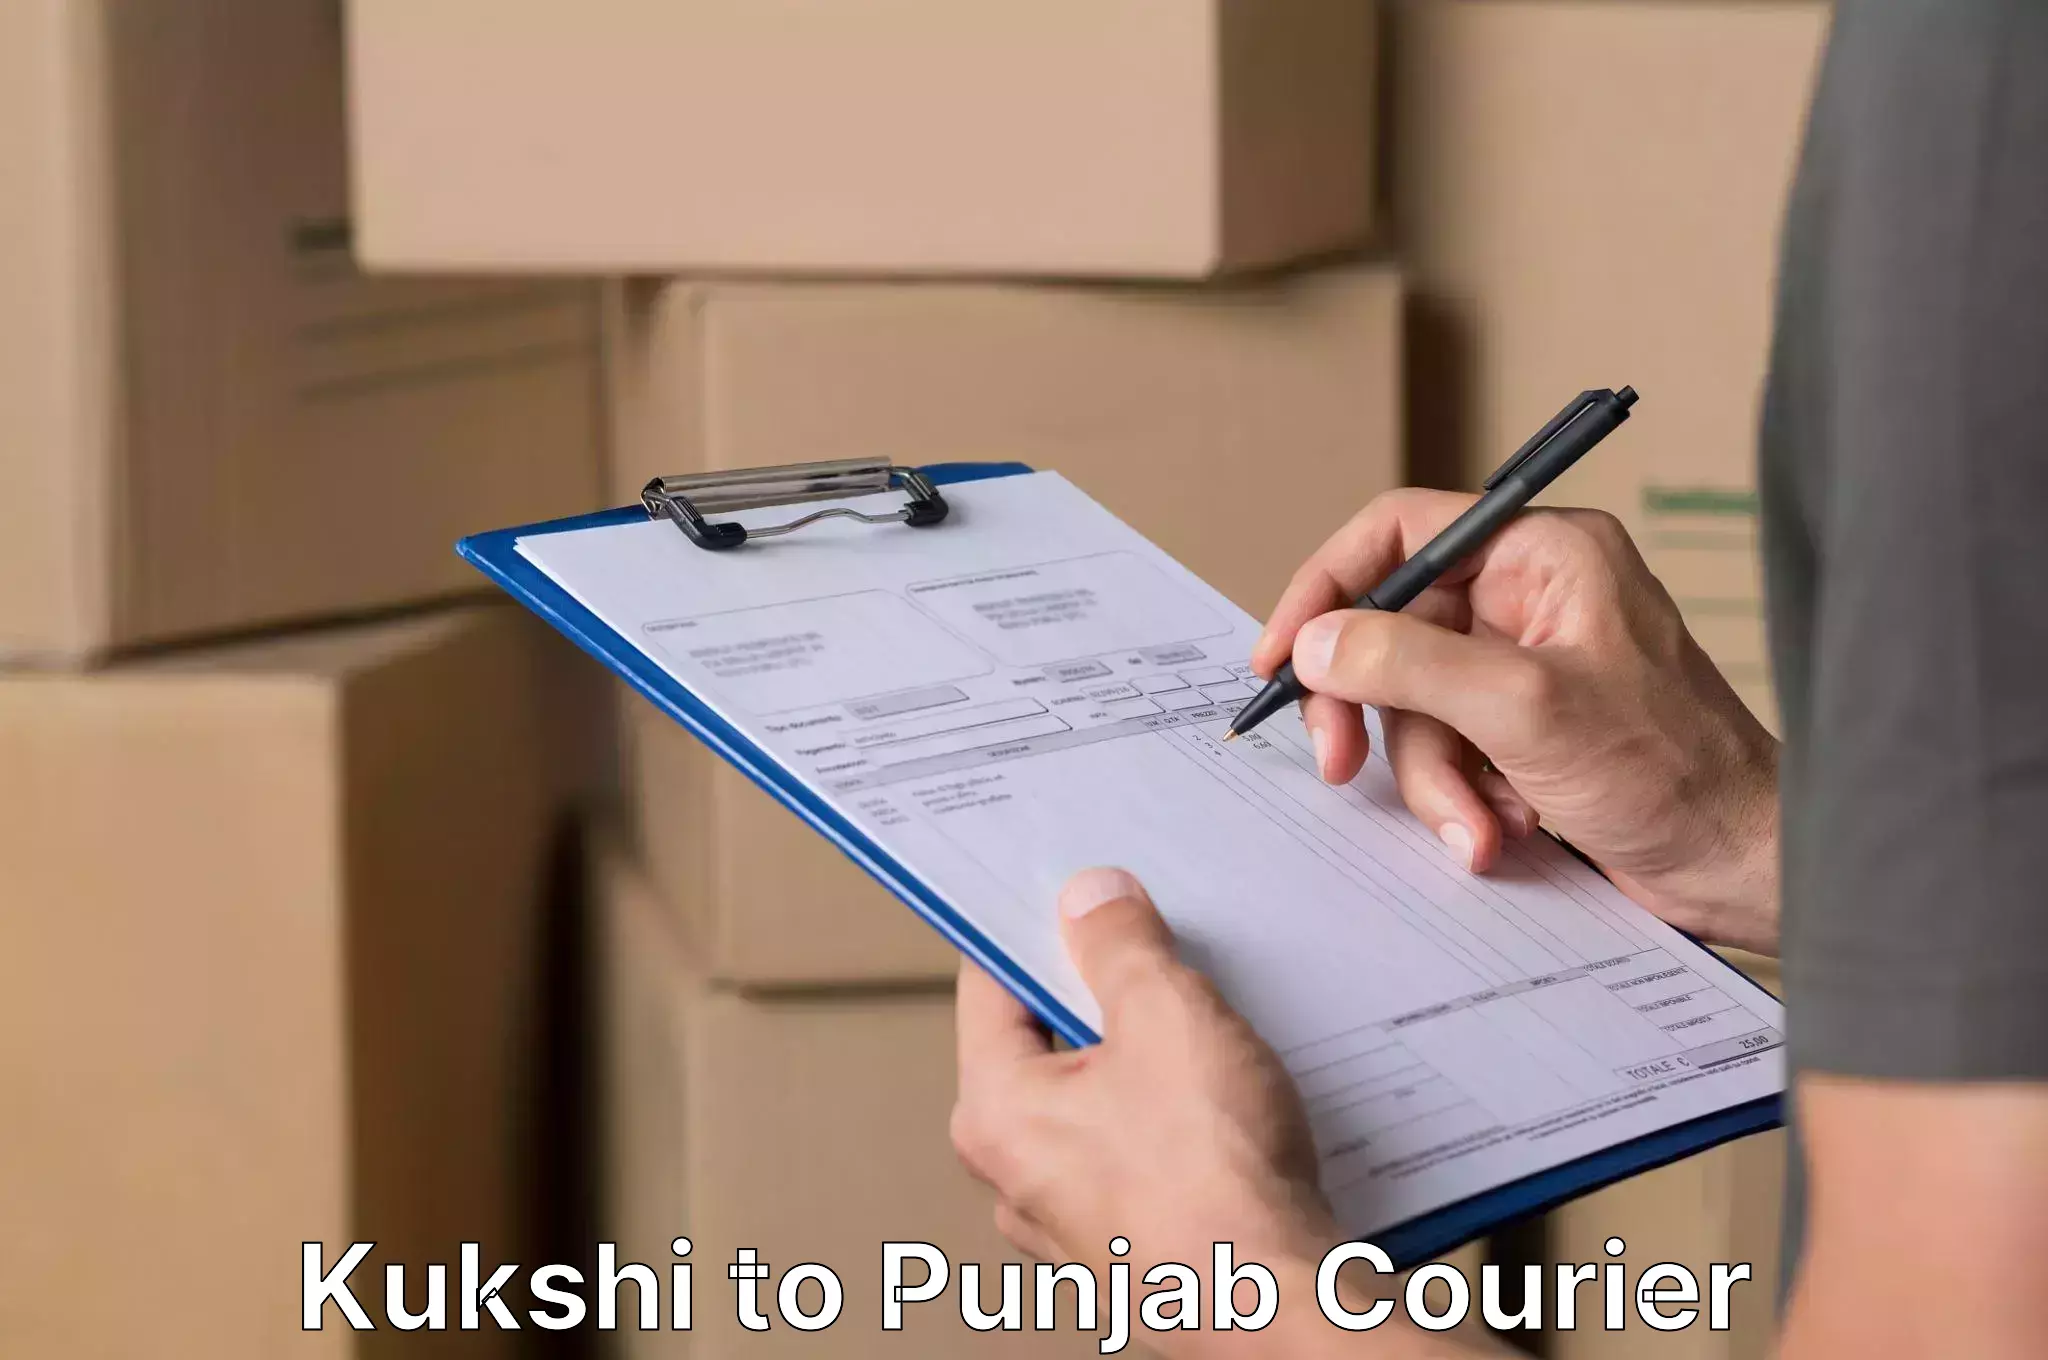 Professional furniture relocation Kukshi to Punjab